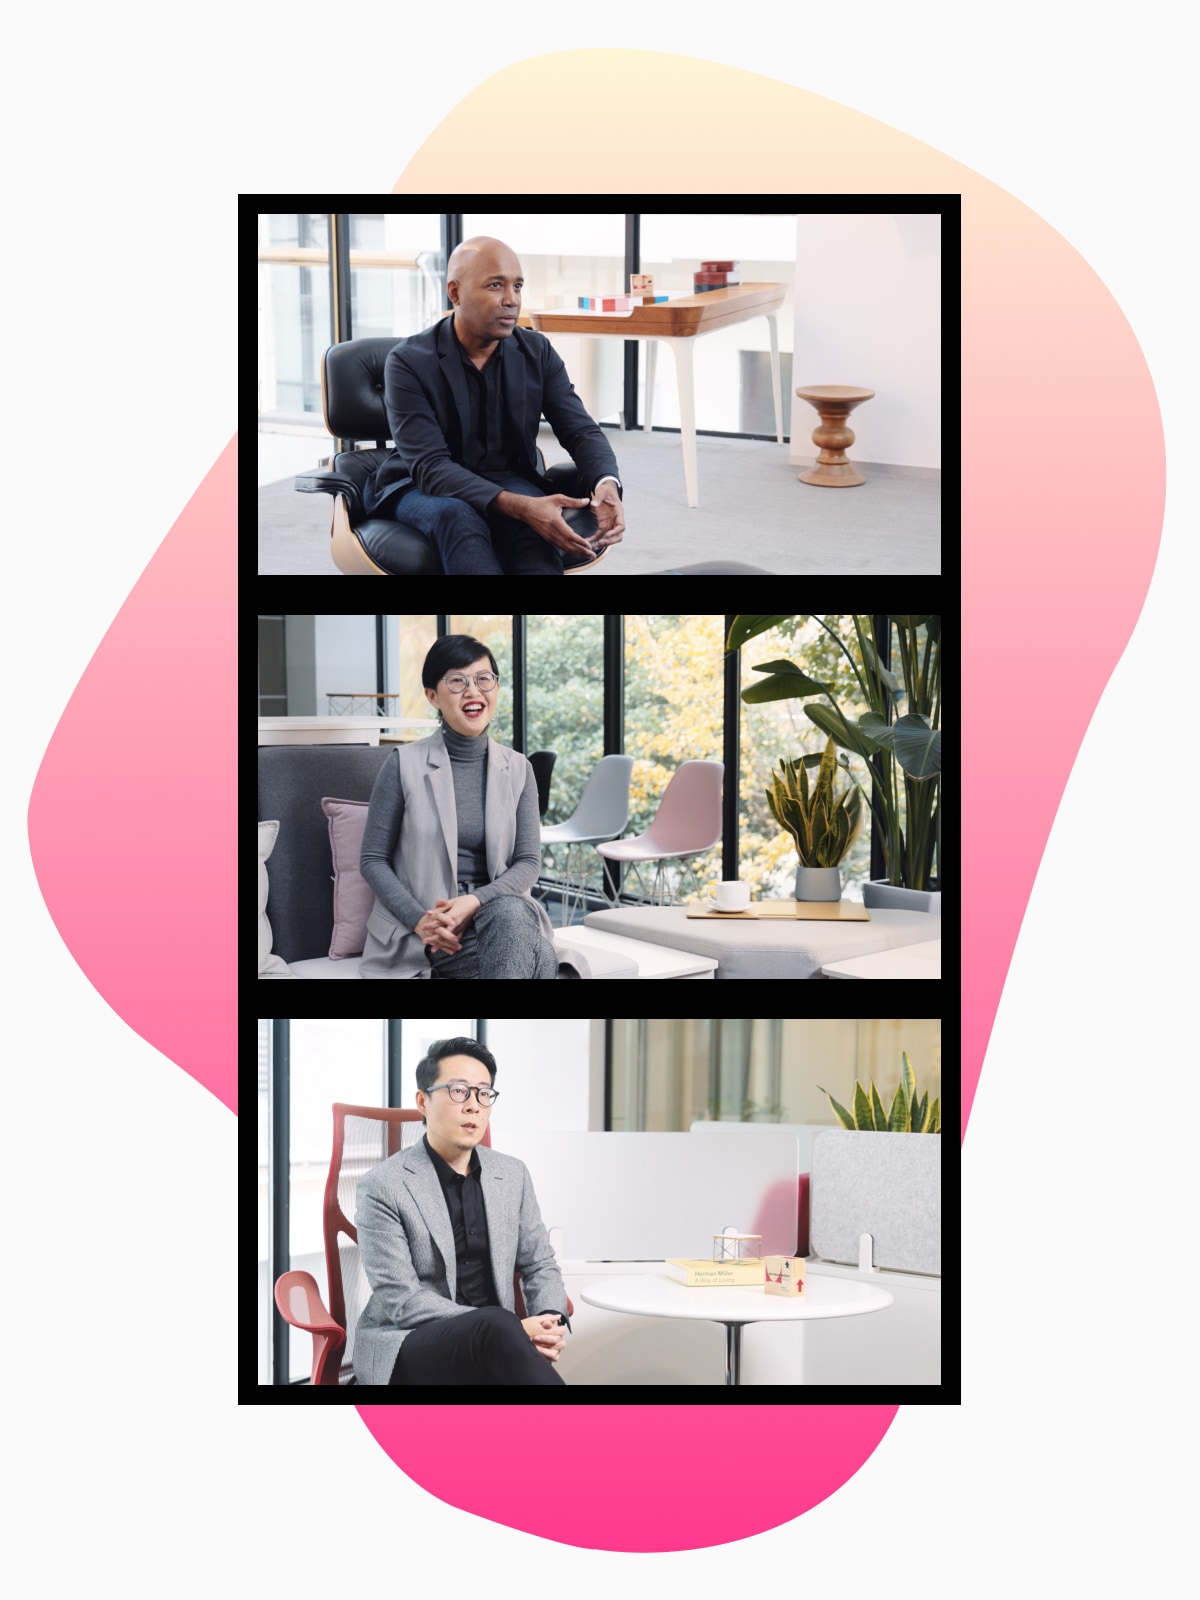 图片上分屏展示了参加《展望未来》对话的三位设计师。图片背后有一个粉红色的有机形状。